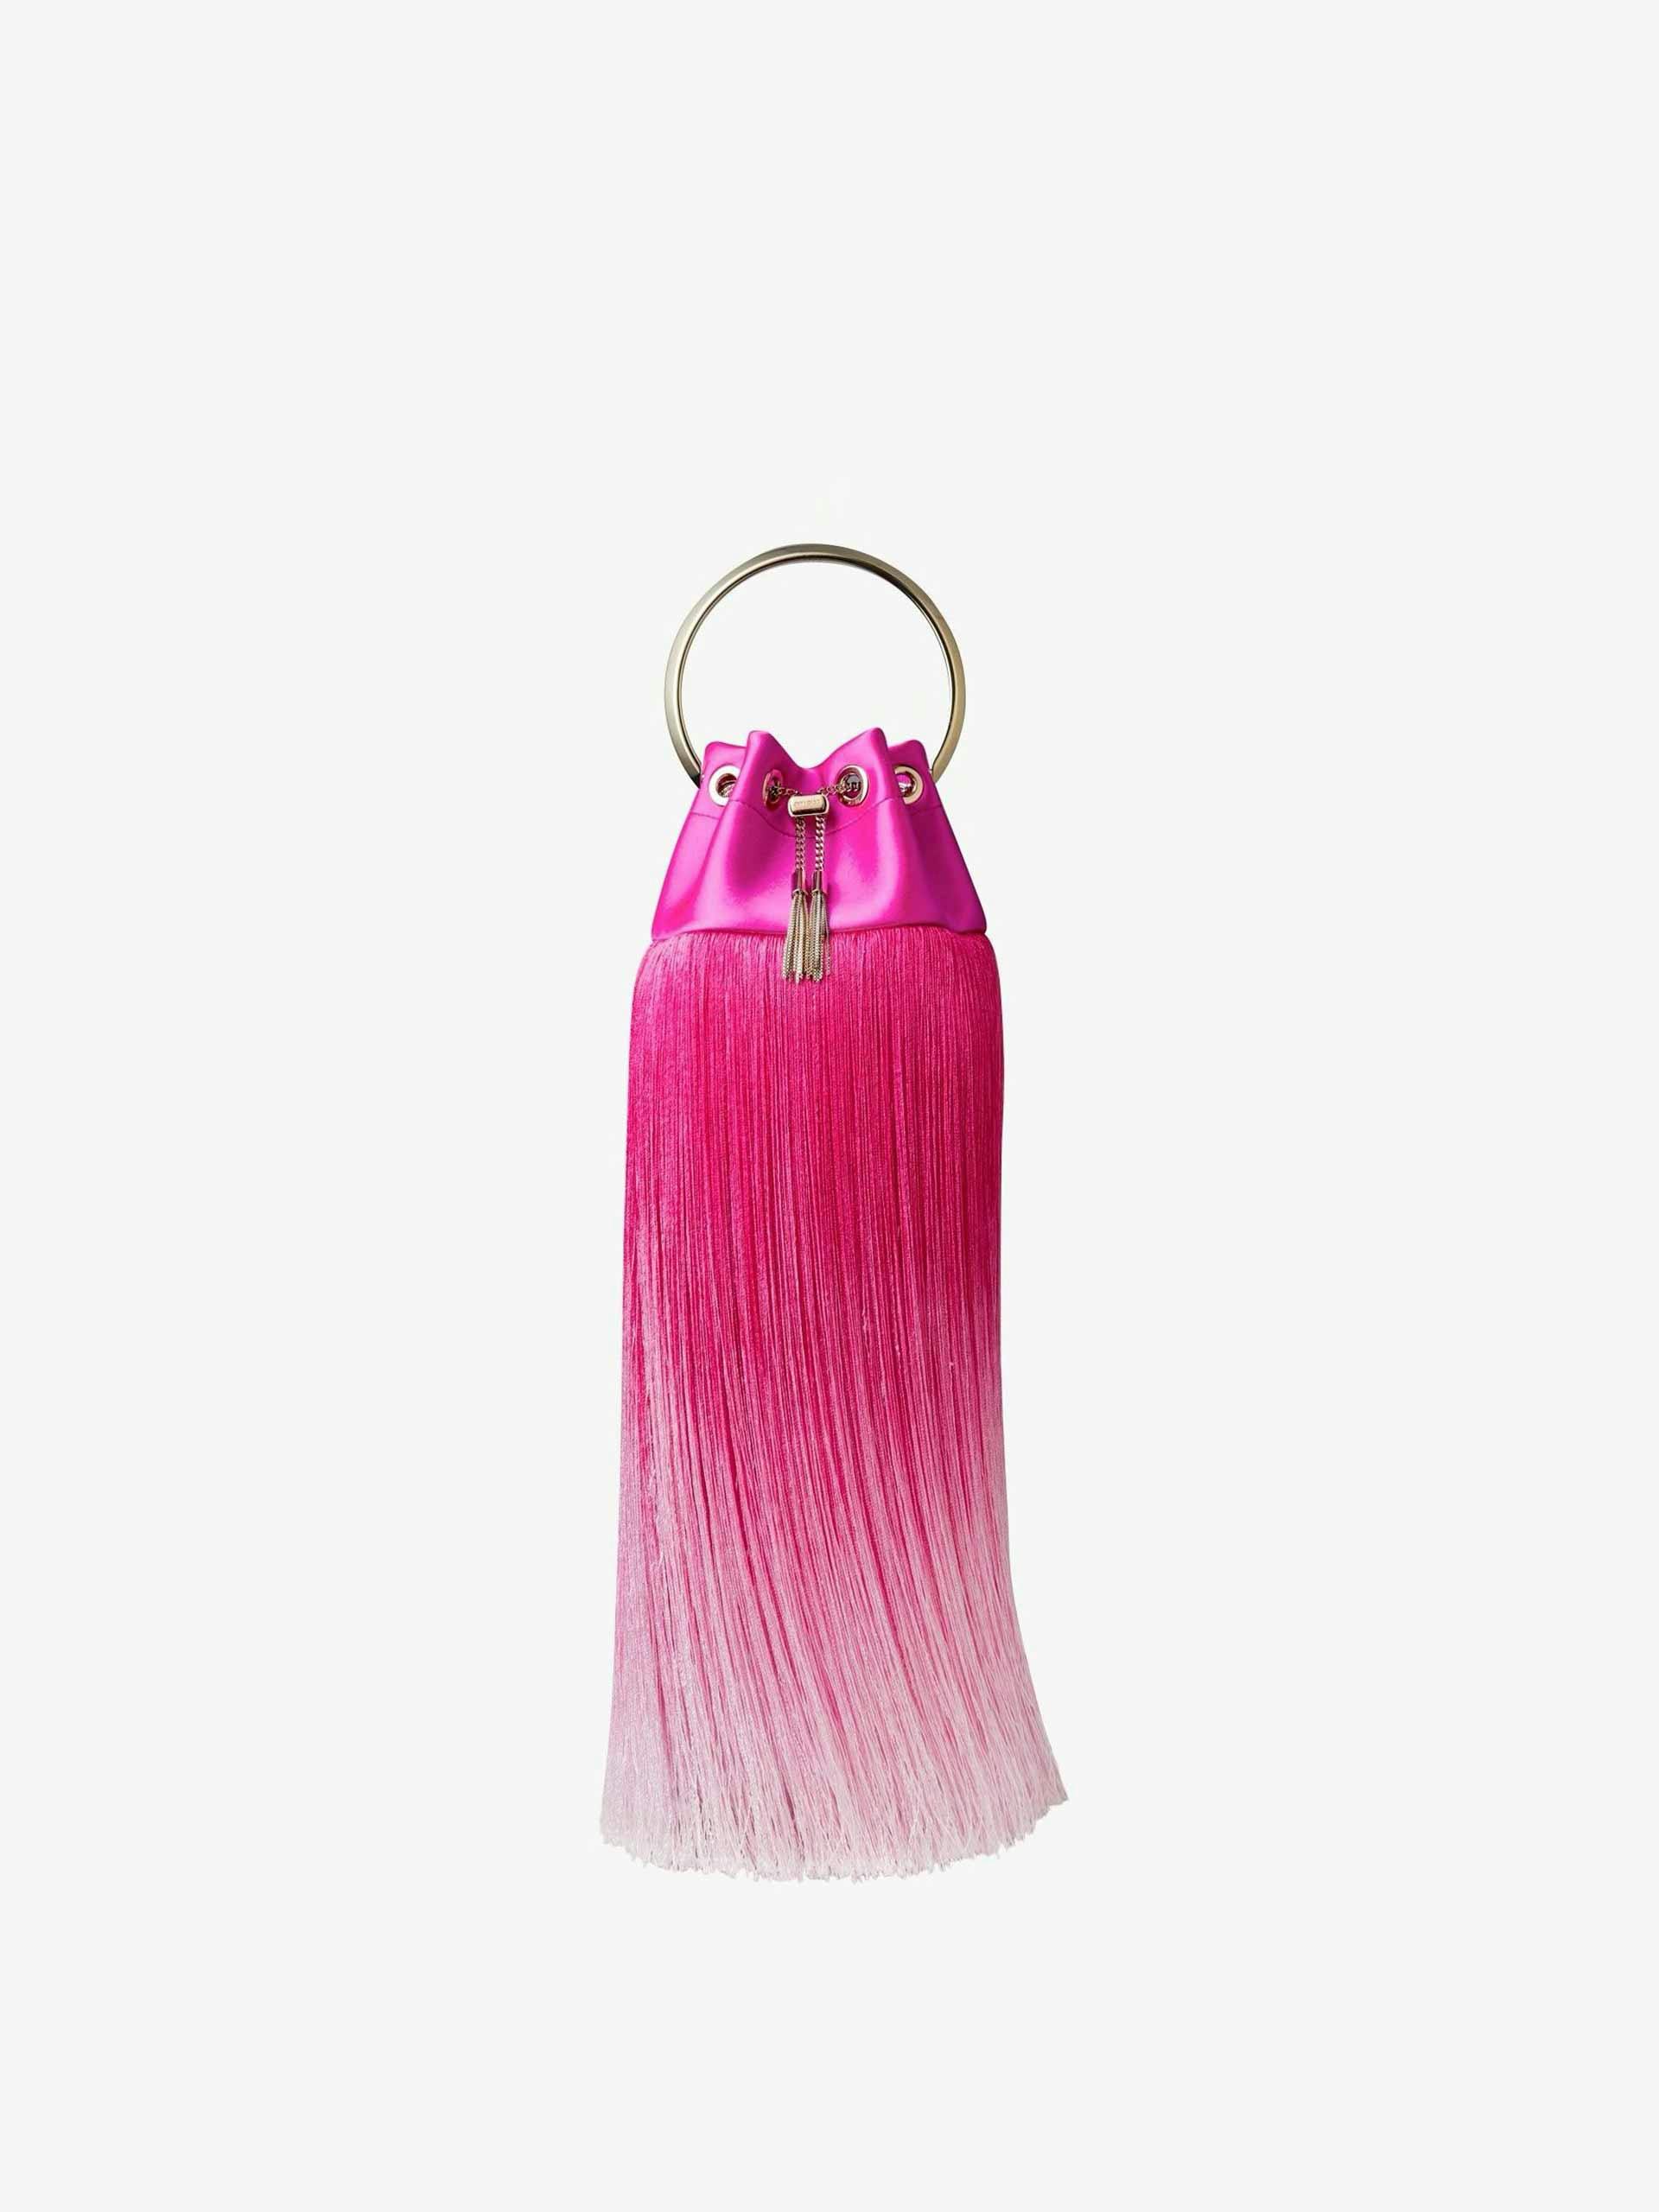 Pink fringed bag